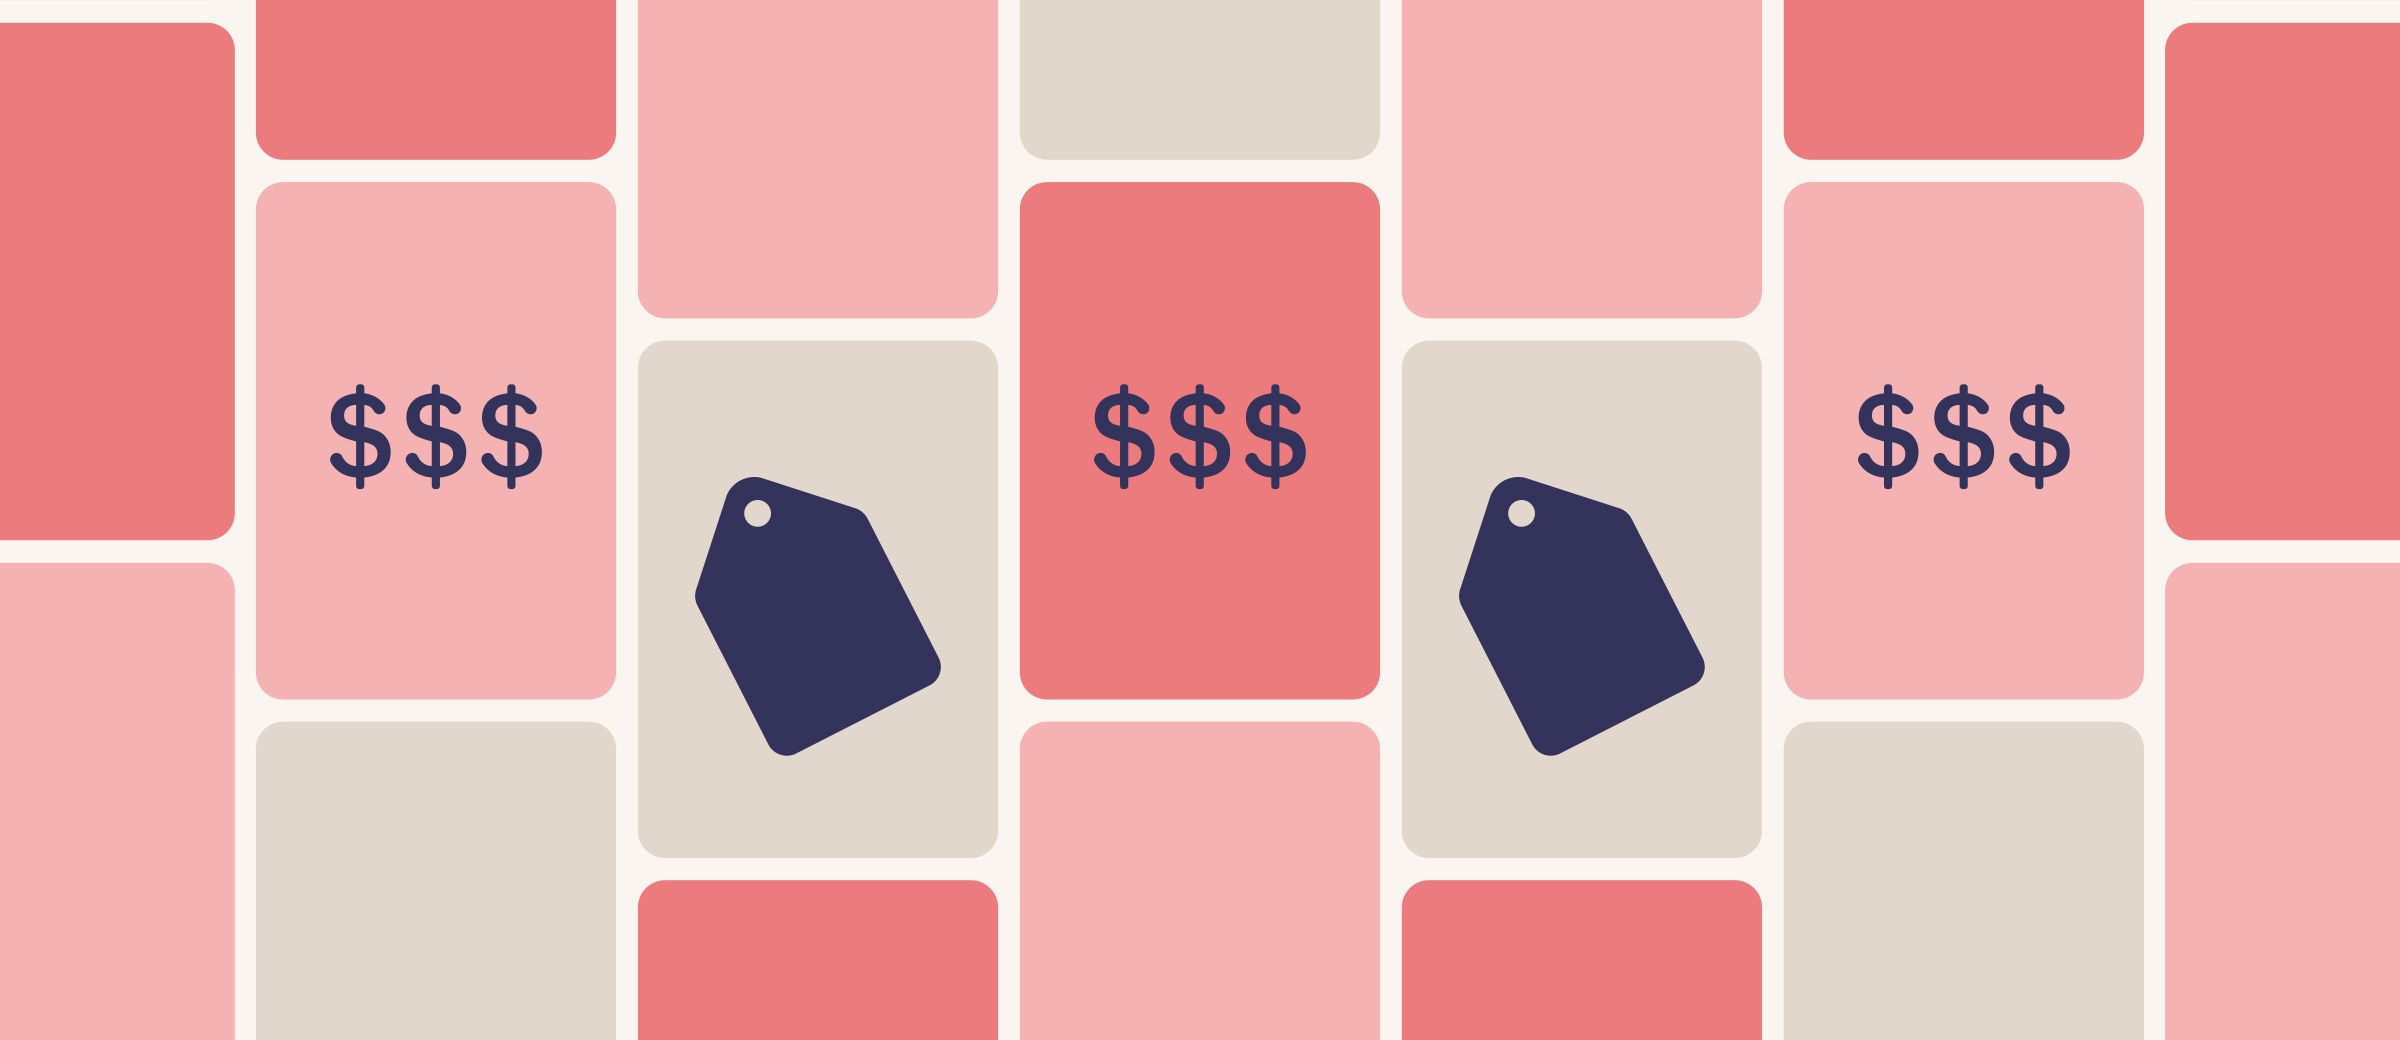 How to Make Money on Pinterest: Pinterest Shopping Guide